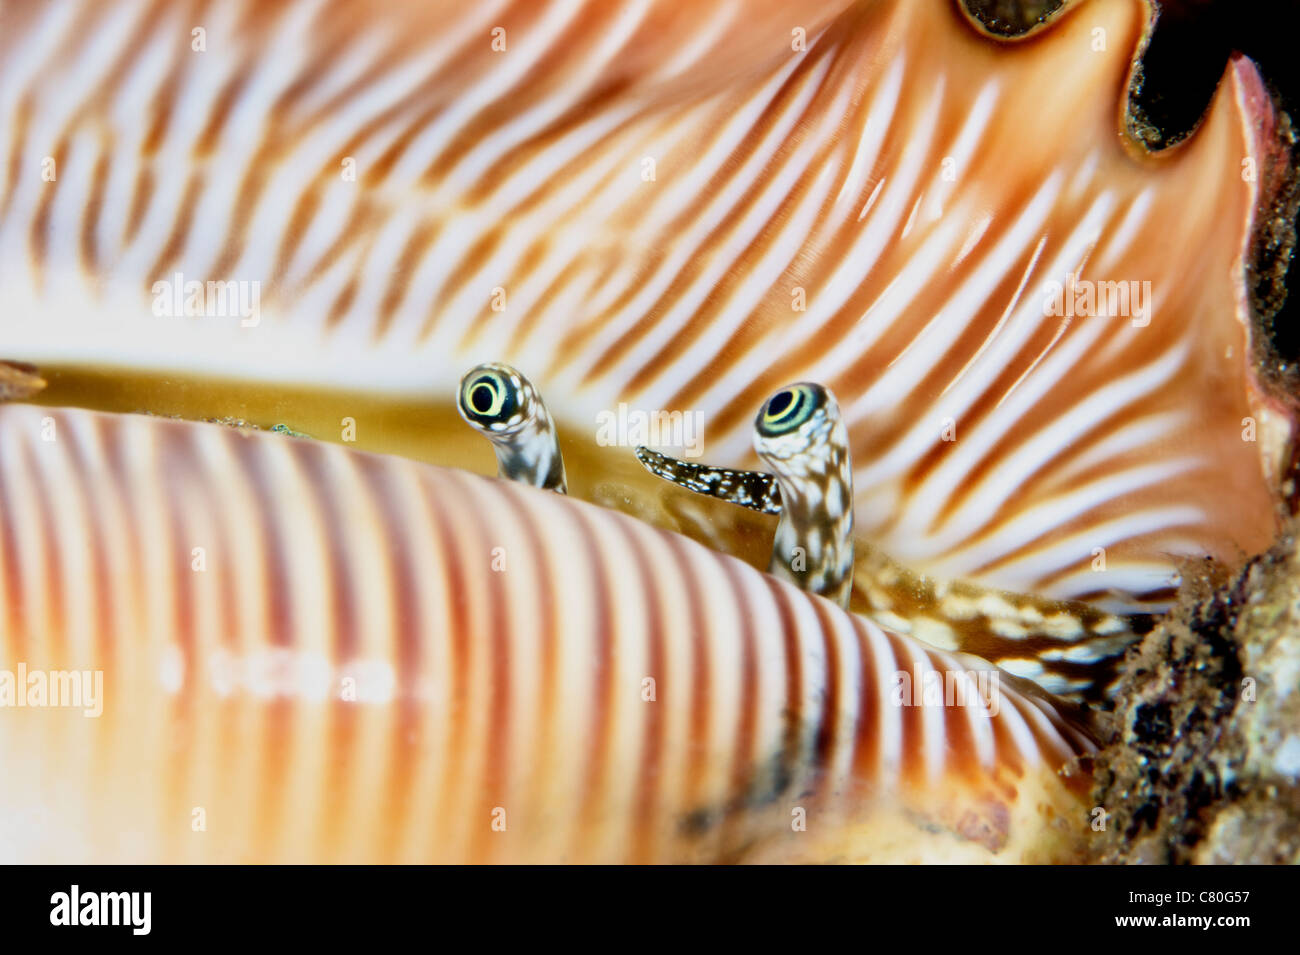 Une conque live shellfish donne de sa coquille, la Papouasie-Nouvelle-Guinée. Banque D'Images